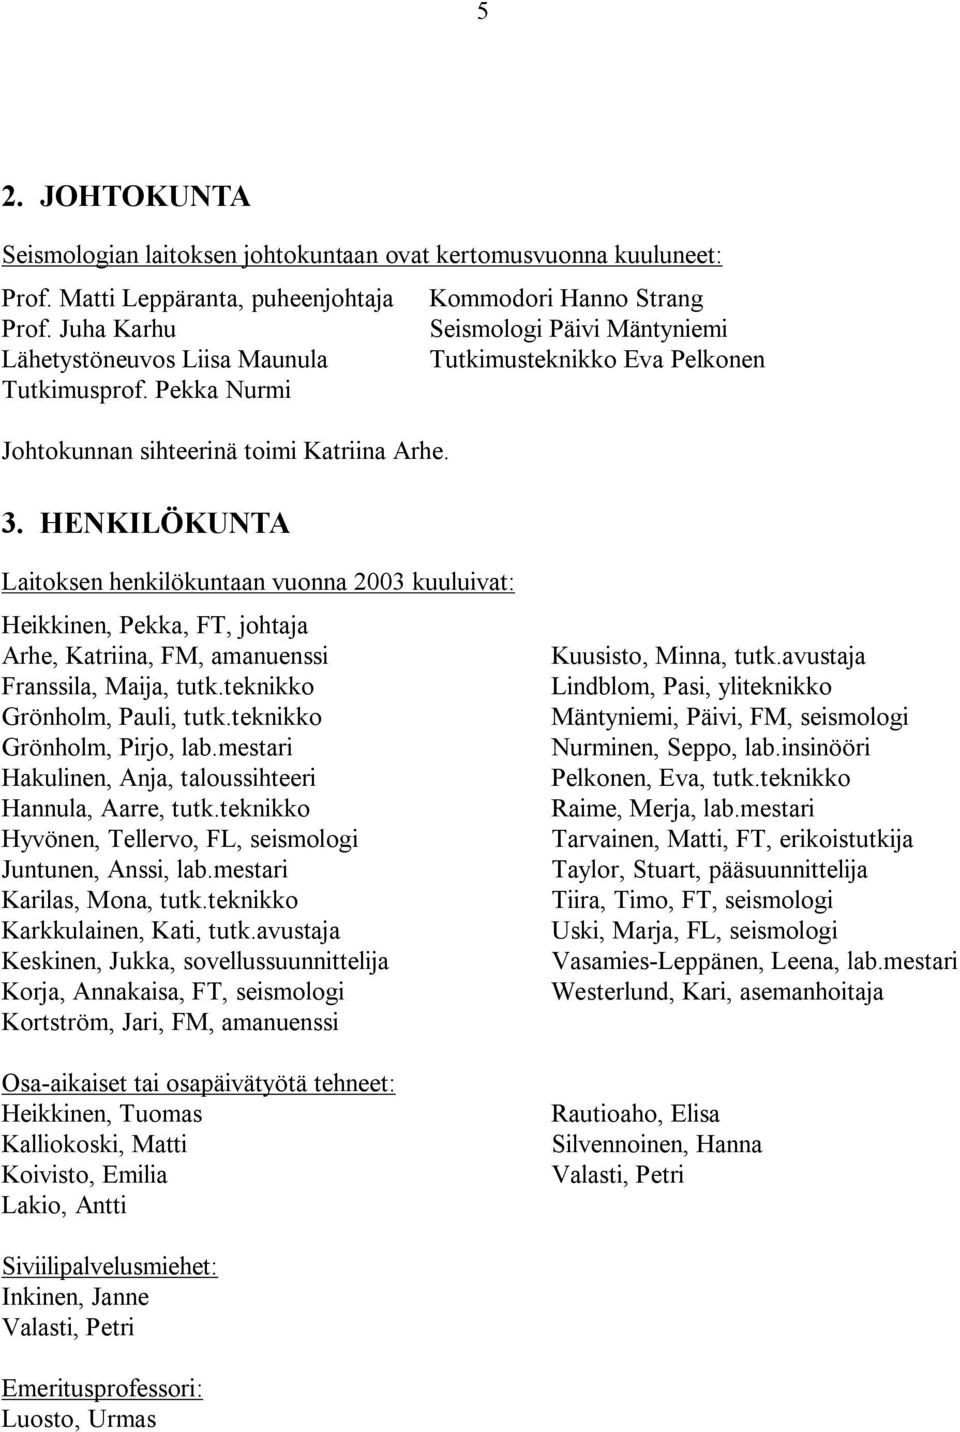 HENKILÖKUNTA Laitoksen henkilökuntaan vuonna 2003 kuuluivat: Heikkinen, Pekka, FT, johtaja Arhe, Katriina, FM, amanuenssi Franssila, Maija, tutk.teknikko Grönholm, Pauli, tutk.